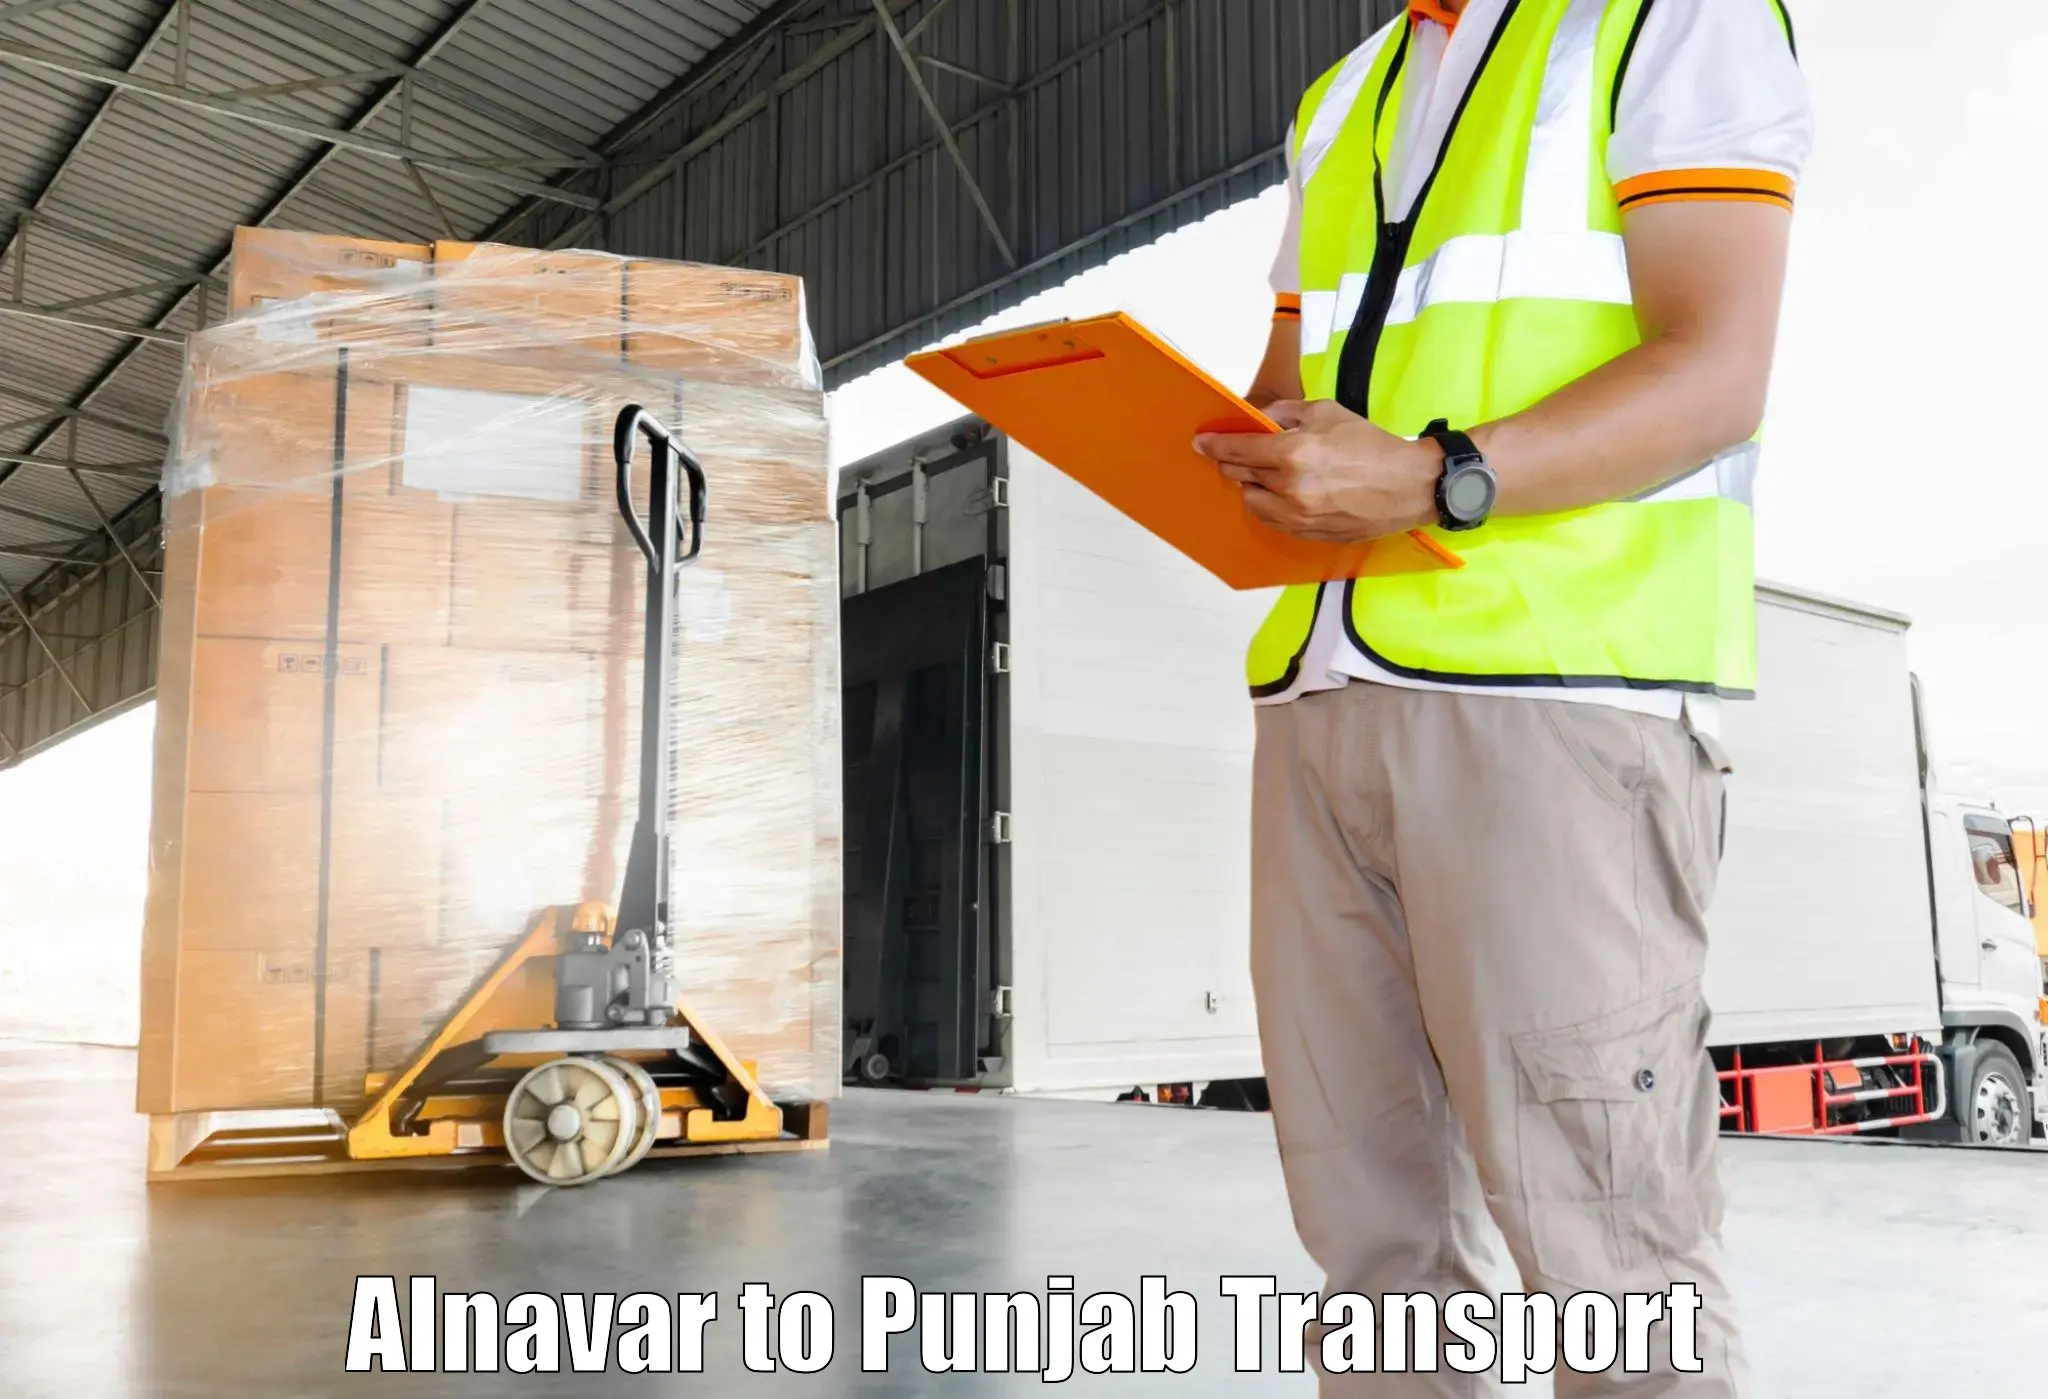 Transport services Alnavar to Nawanshahr